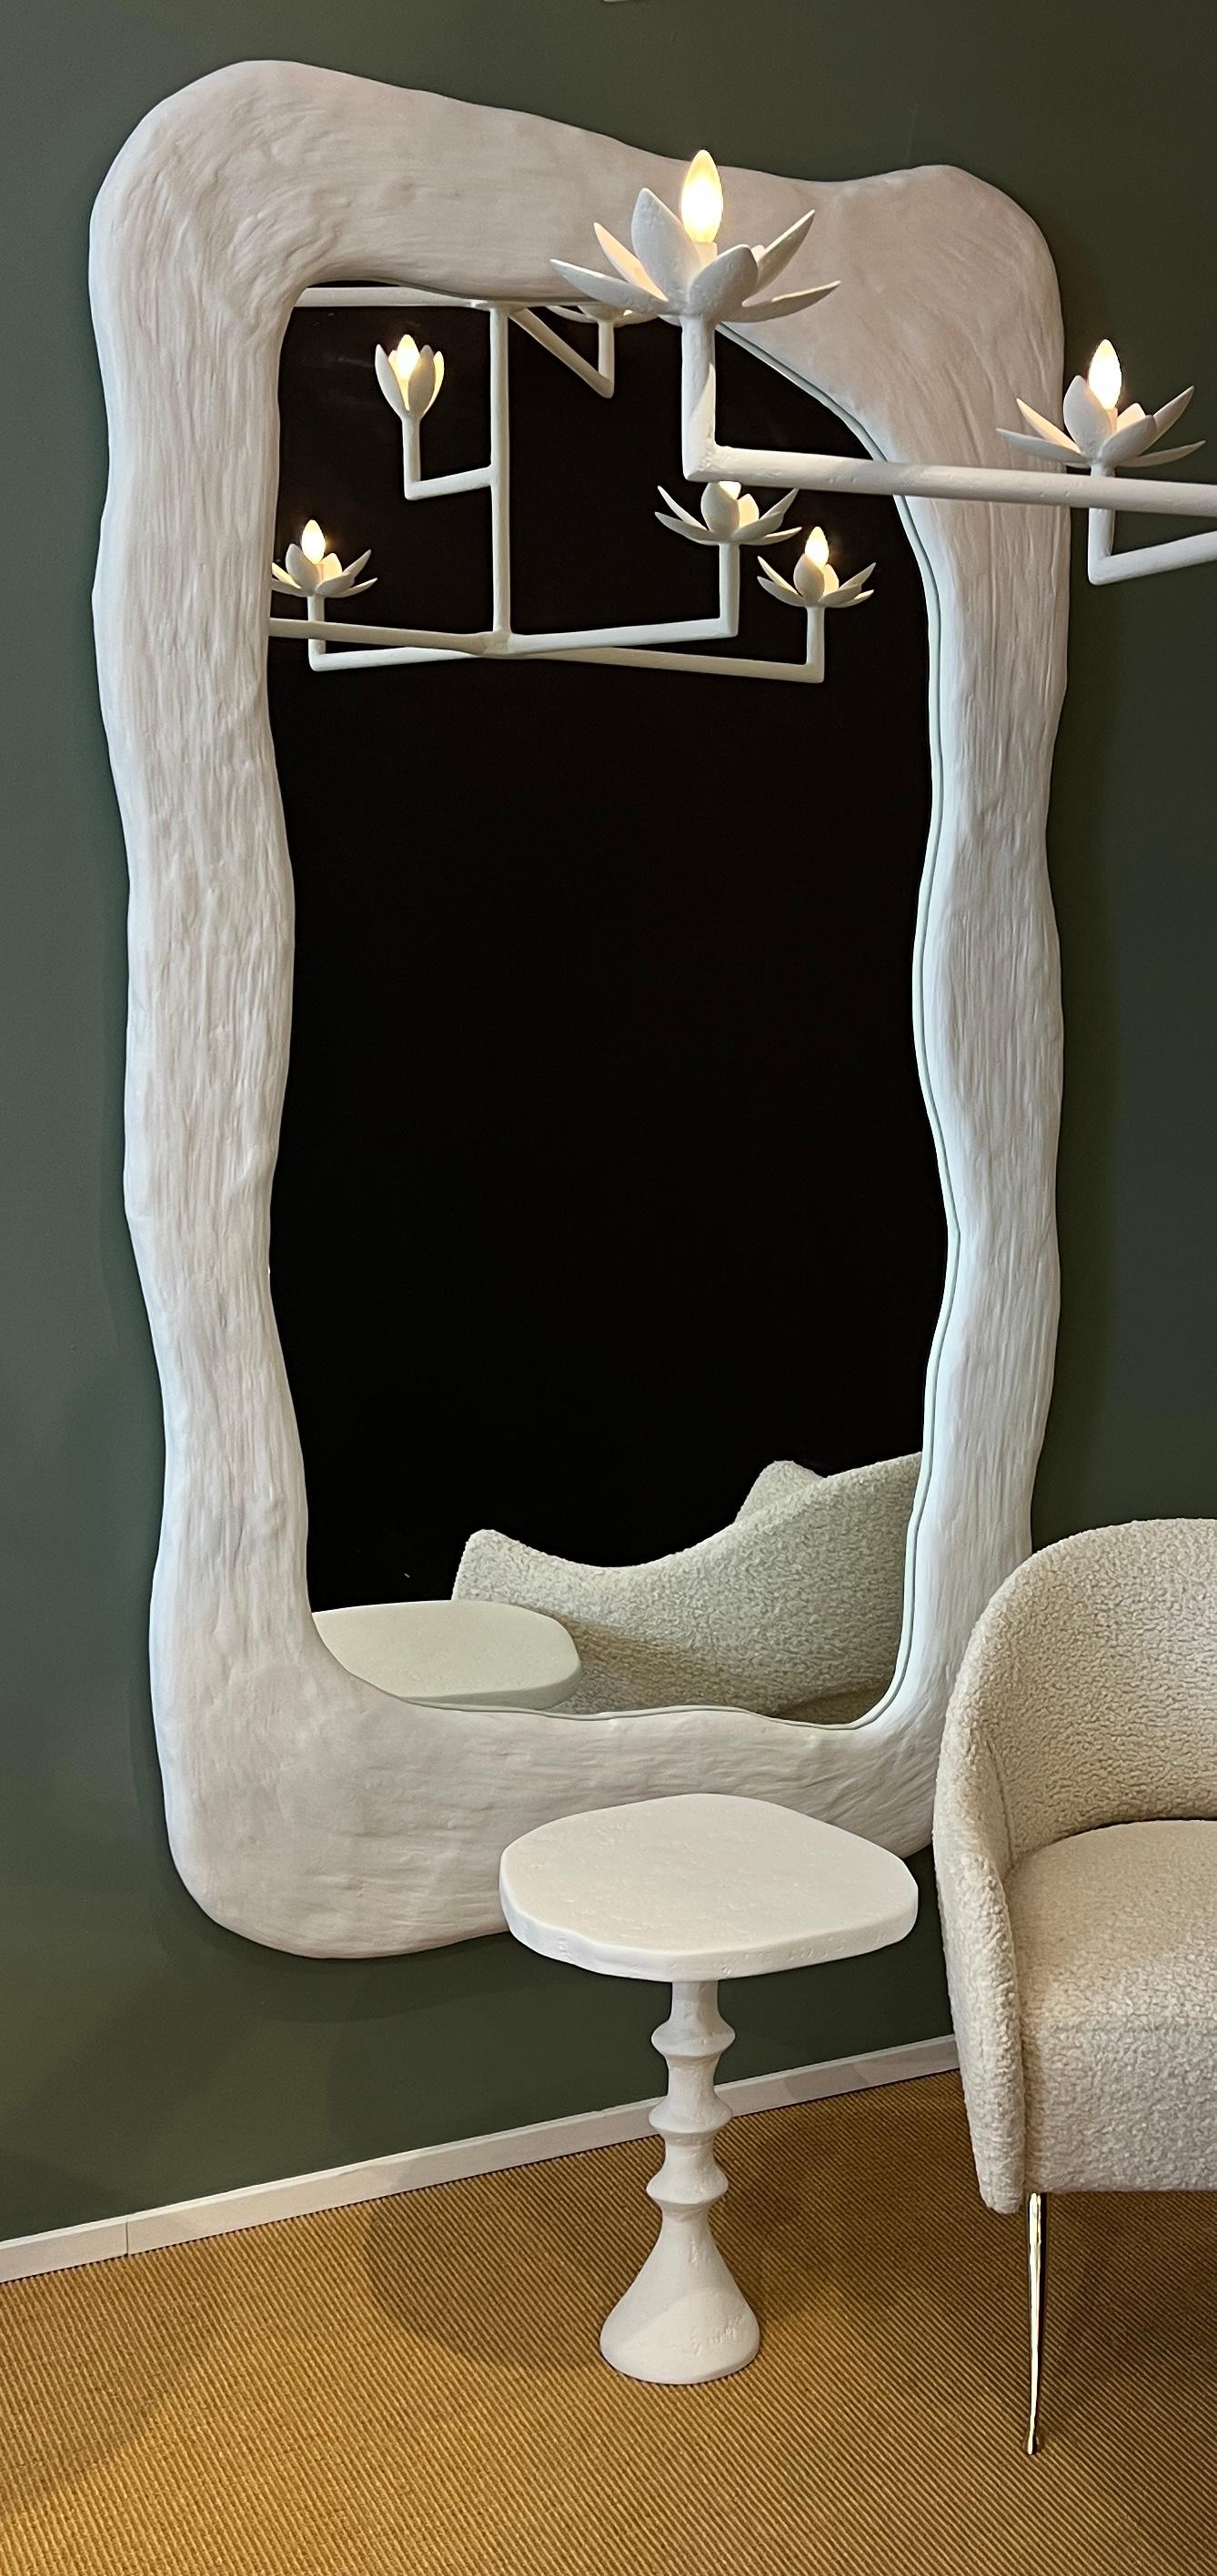 Dieser maßgefertigte übergroße Spiegel wurde von Bourgeois Boheme Atelier entworfen. Dieser großartige skulpturale Spiegel hat eine organische Form und Textur. Es ist ein echtes Kunstwerk. Kann sowohl horizontal als auch vertikal montiert werden.